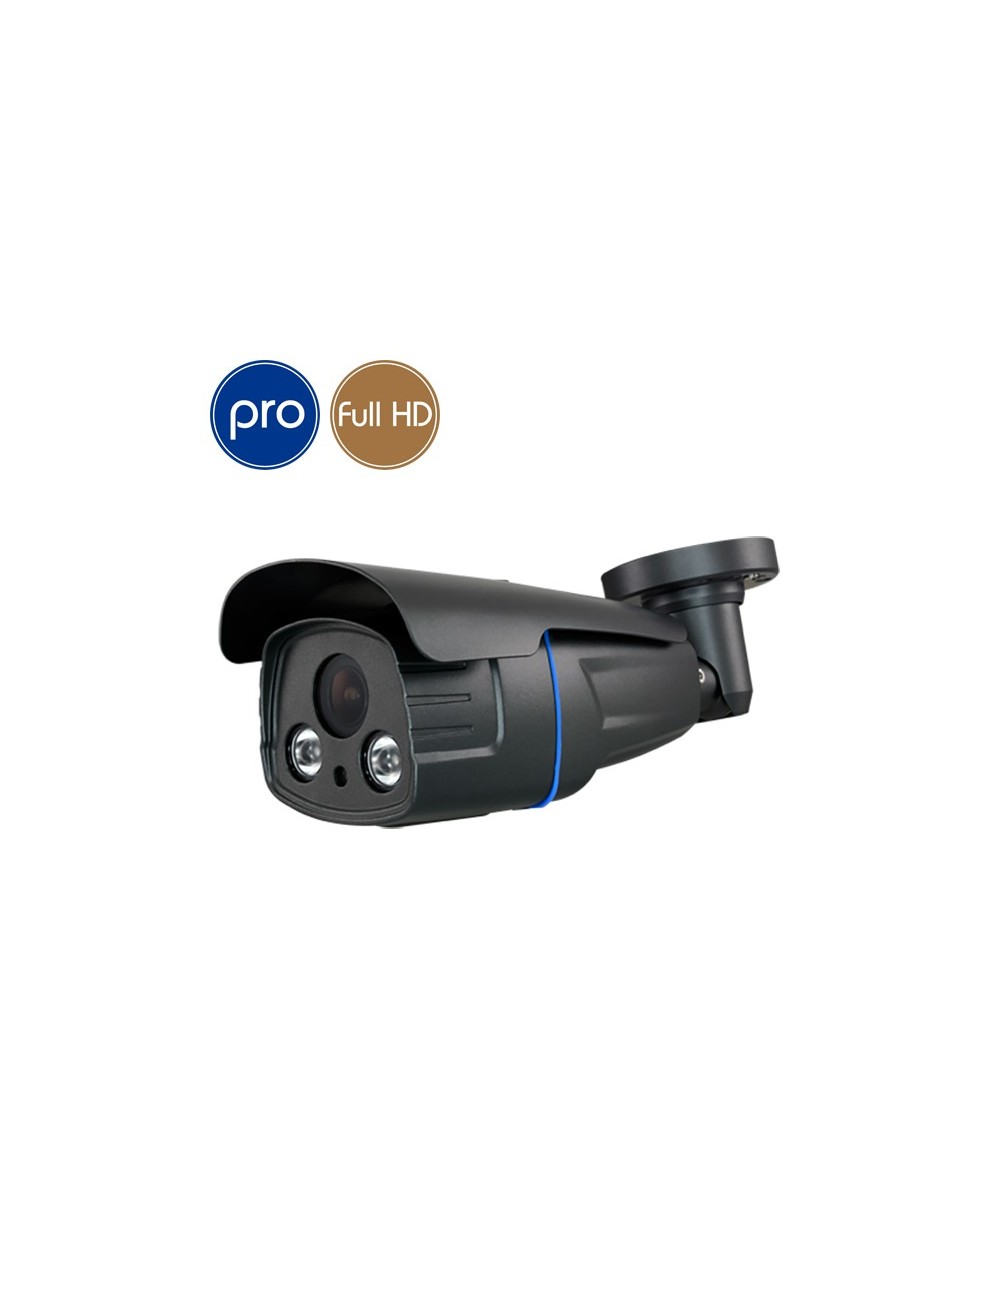 HD camera ZOOM PRO - Full HD - SONY Ultra Low Light - Zoom motorized - IR 60m